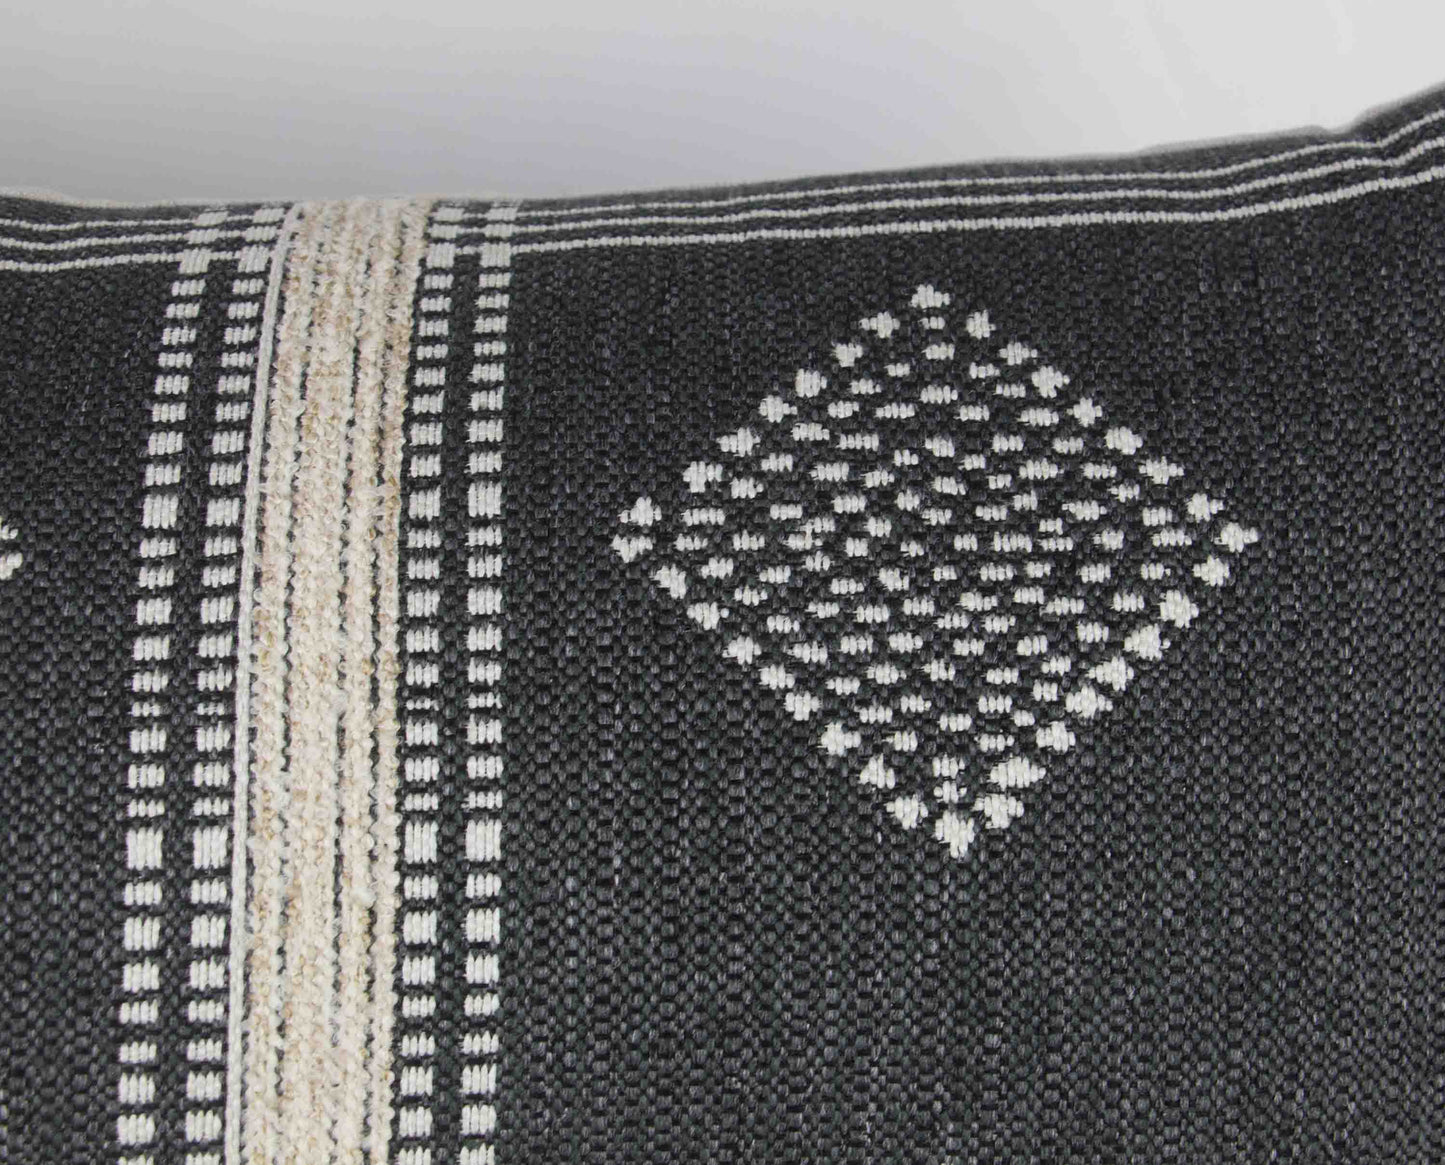 Charcoal Grey & Cream Tribal Pillow Cover, 14x36" long lumbar